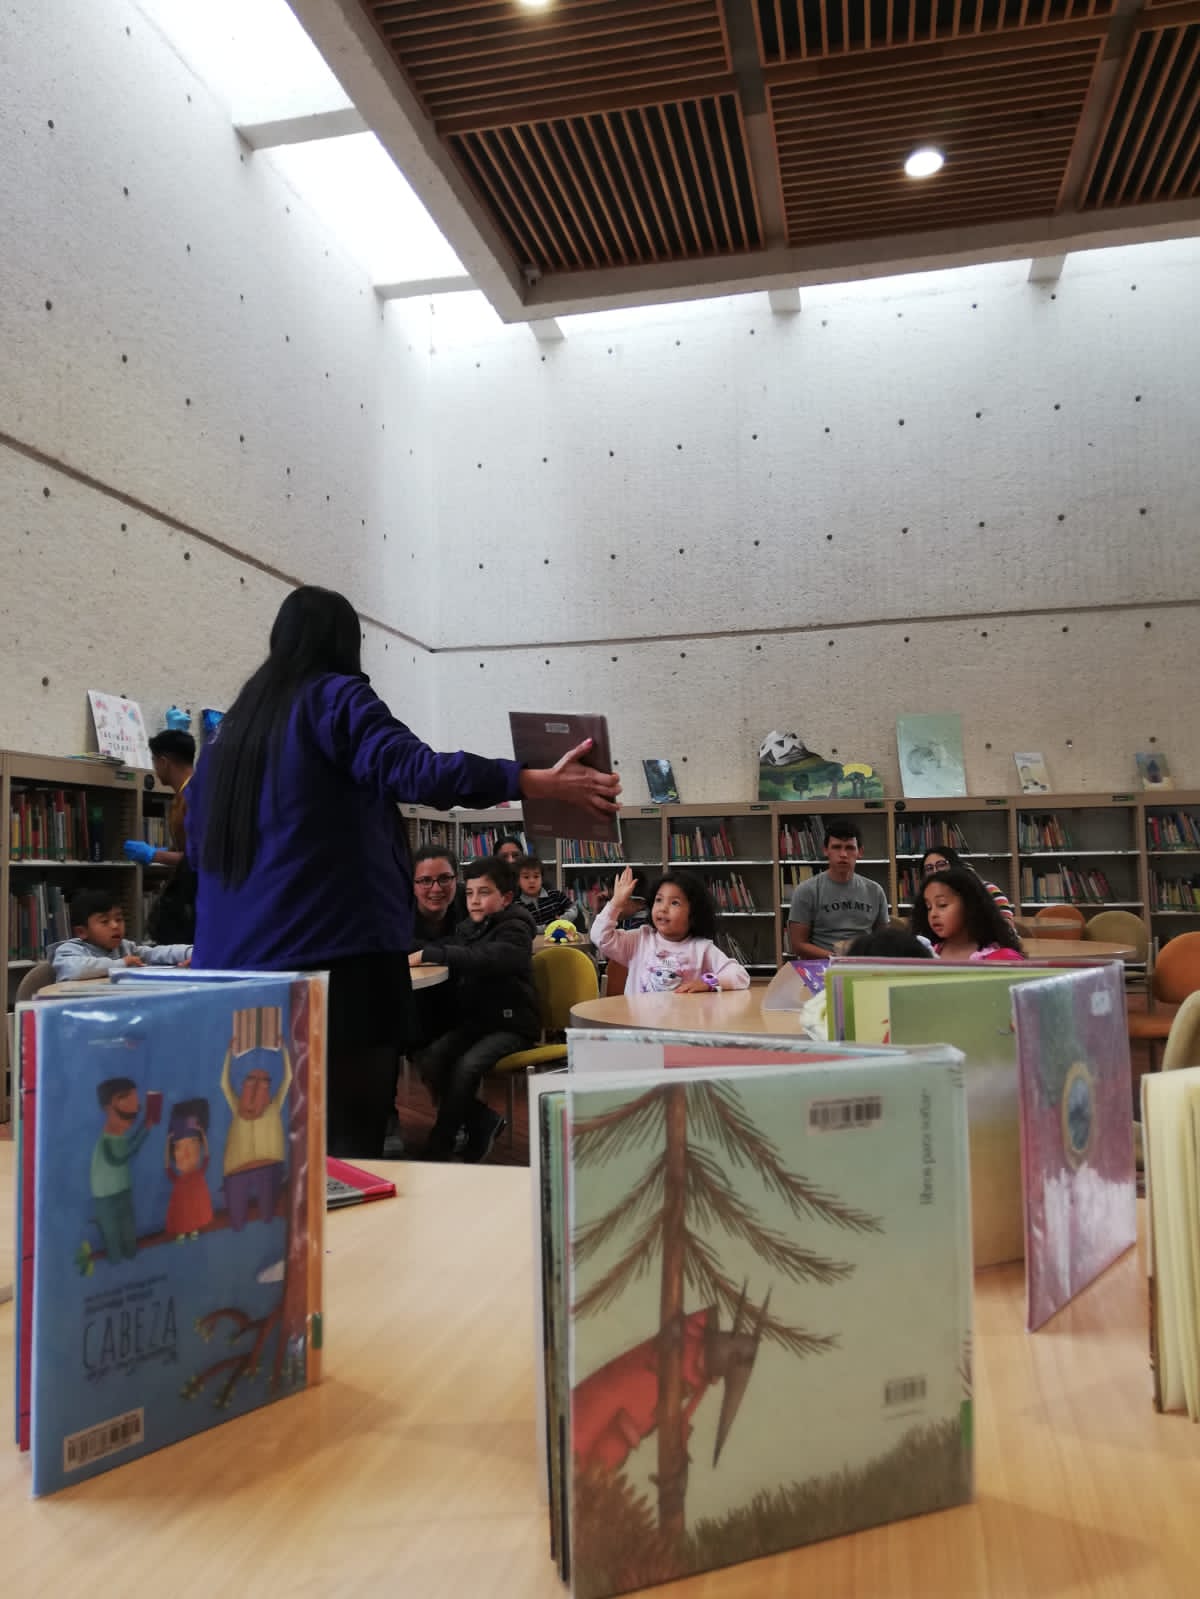 Desde crear historias y  hasta bailar un libro, el club de lectura ofrece experiencias que buscan el acercamiento y la construcción de vínculos afectivos